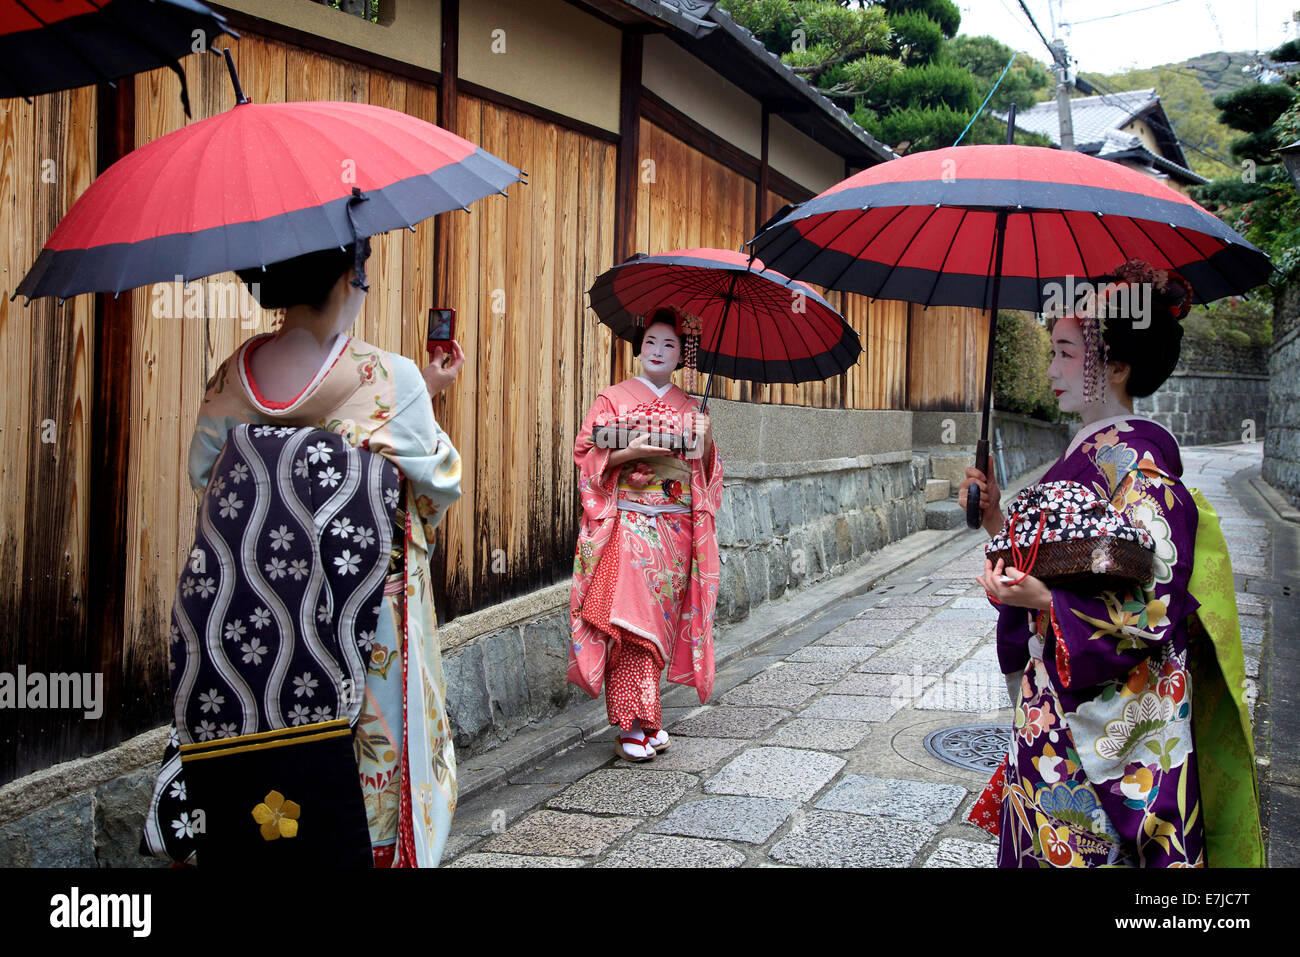 La femme japonaise, la beauté féminine, geishas posant pour une photo, zone de Gion, Kyoto, Japon, Asie. Maquillage geisha traditionnelles et robe Banque D'Images